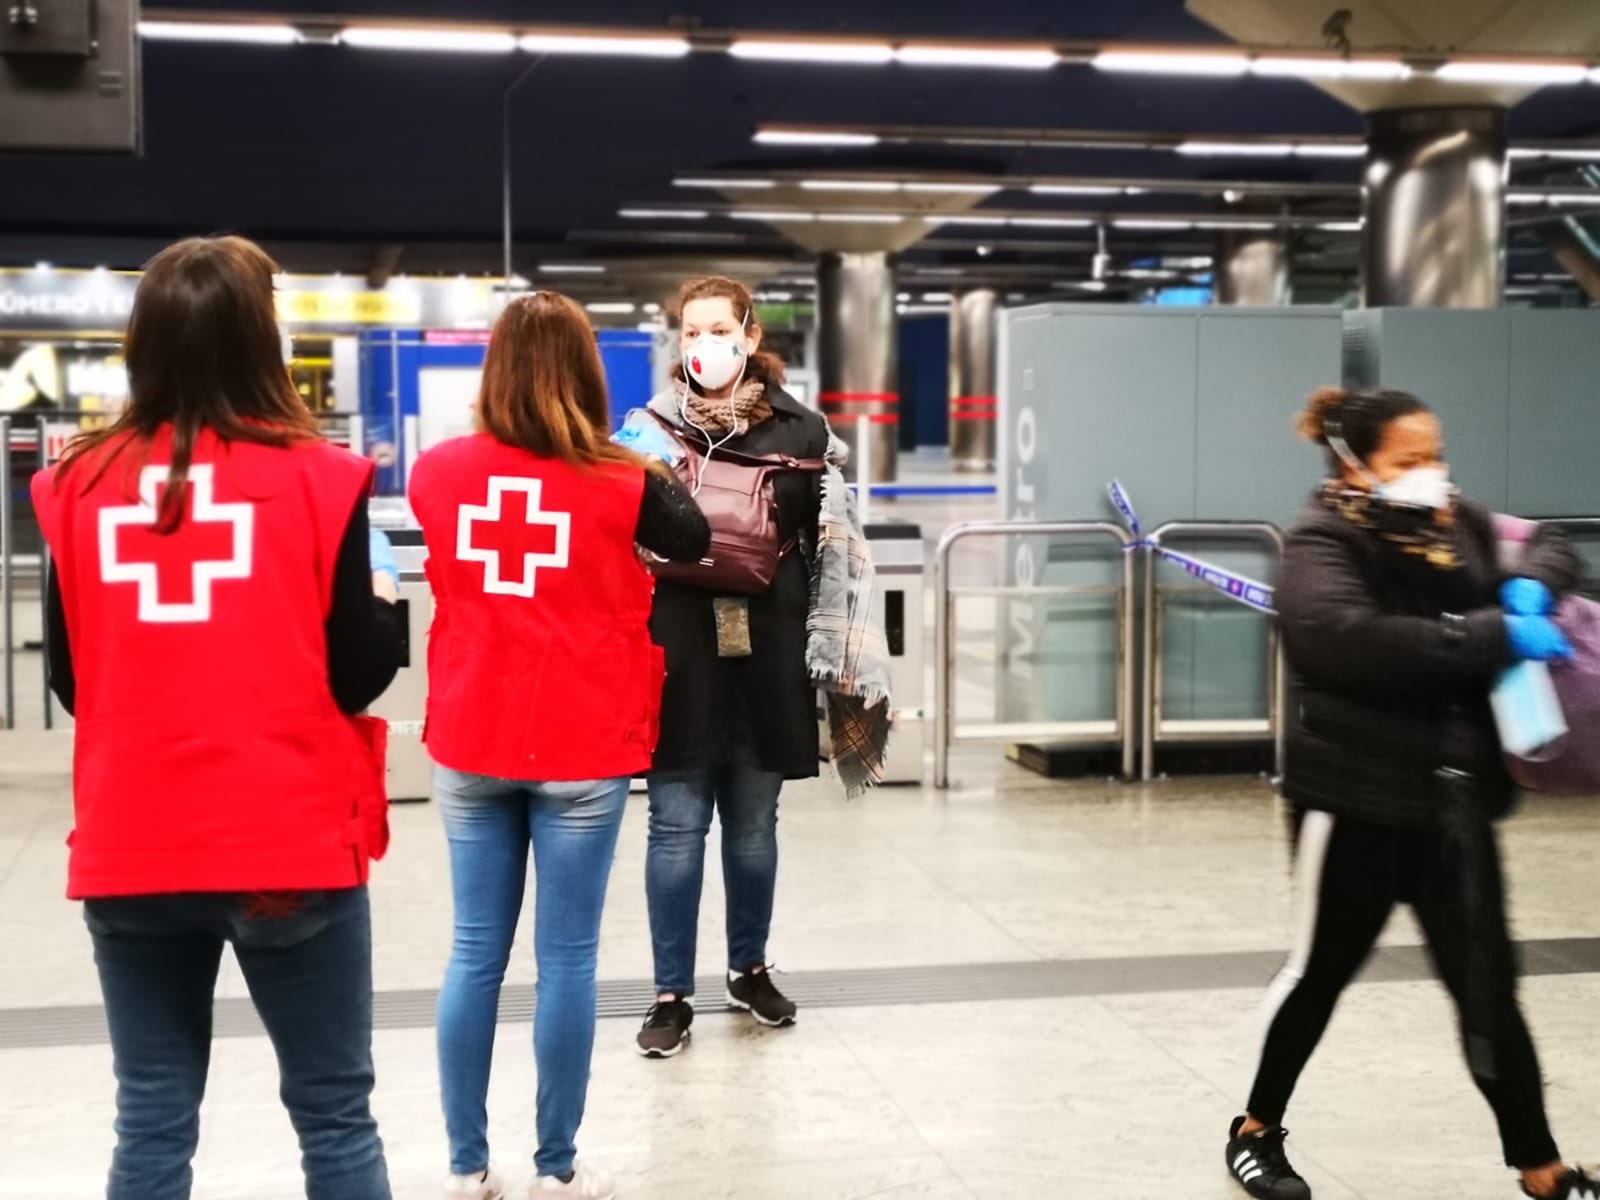 Cruz Roja RESPONDE alcanza 600.000 intervenciones en un mes